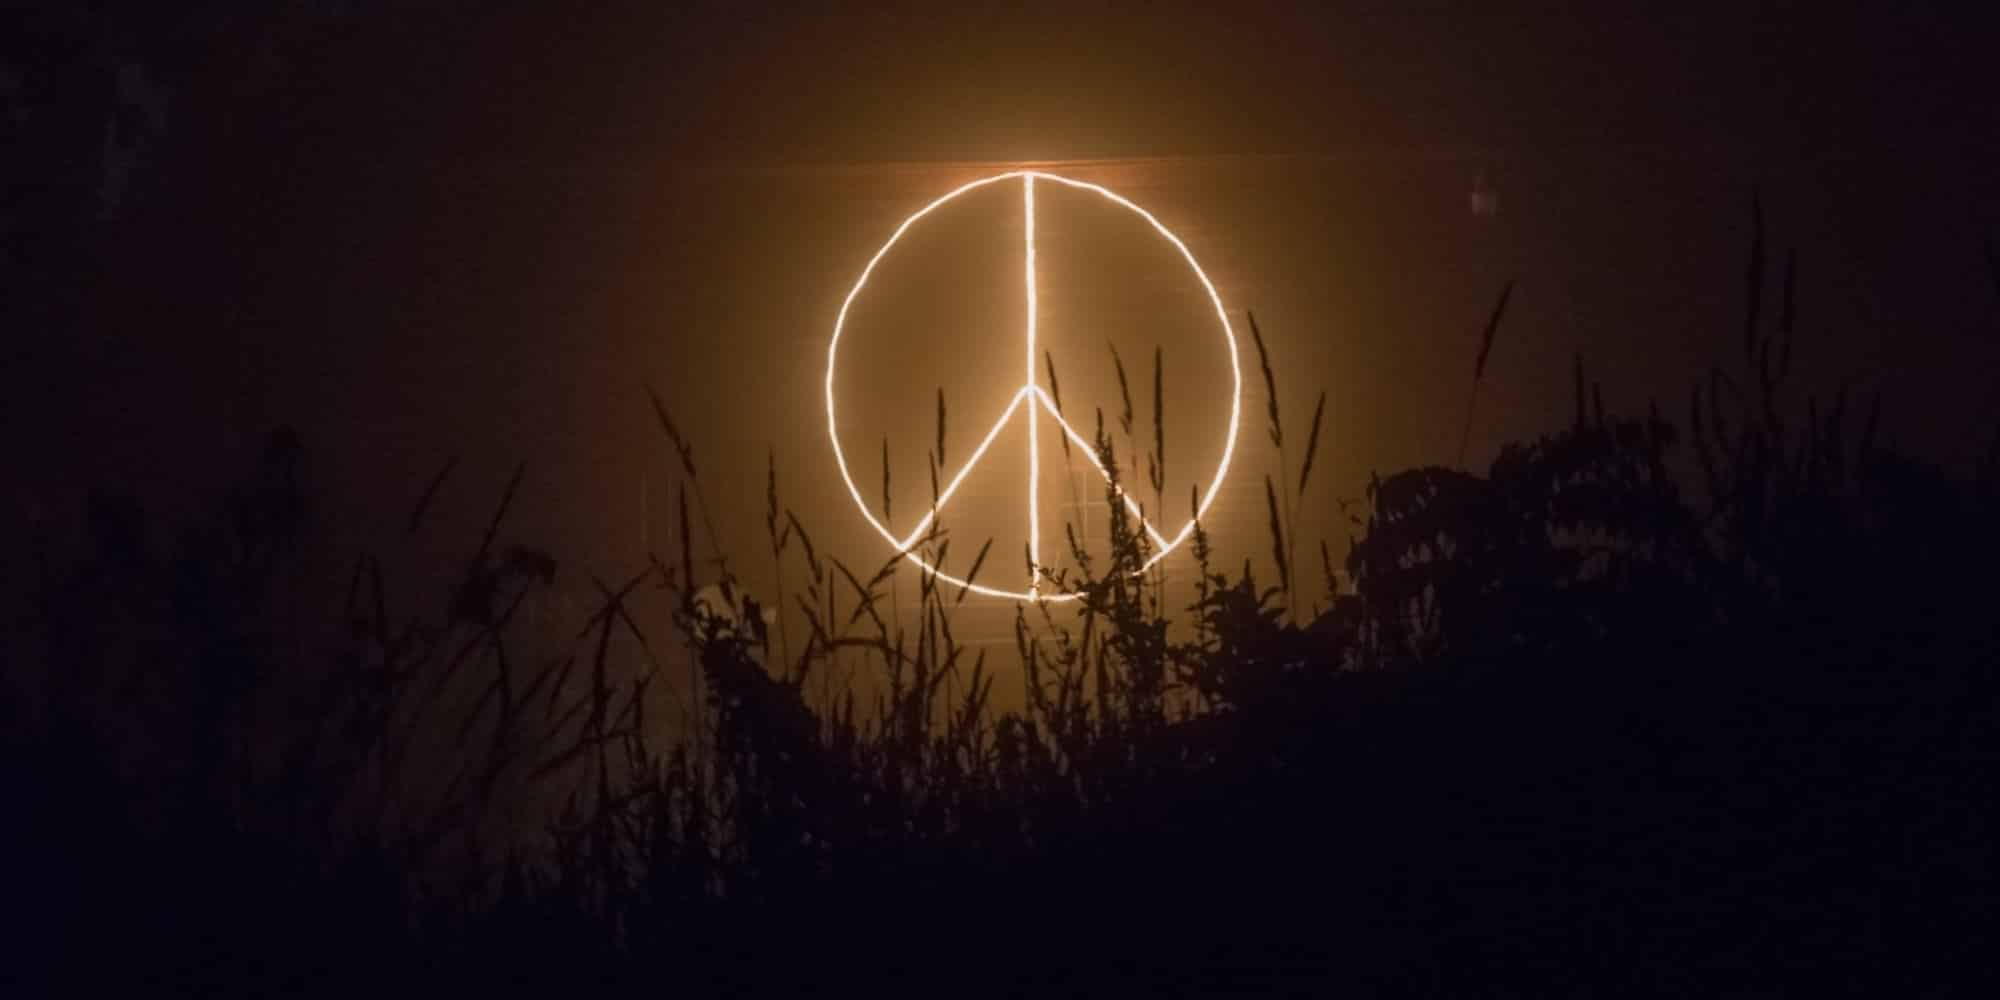 Το σήμα που αναπαριστά την Ειρήνη στον ουρανό